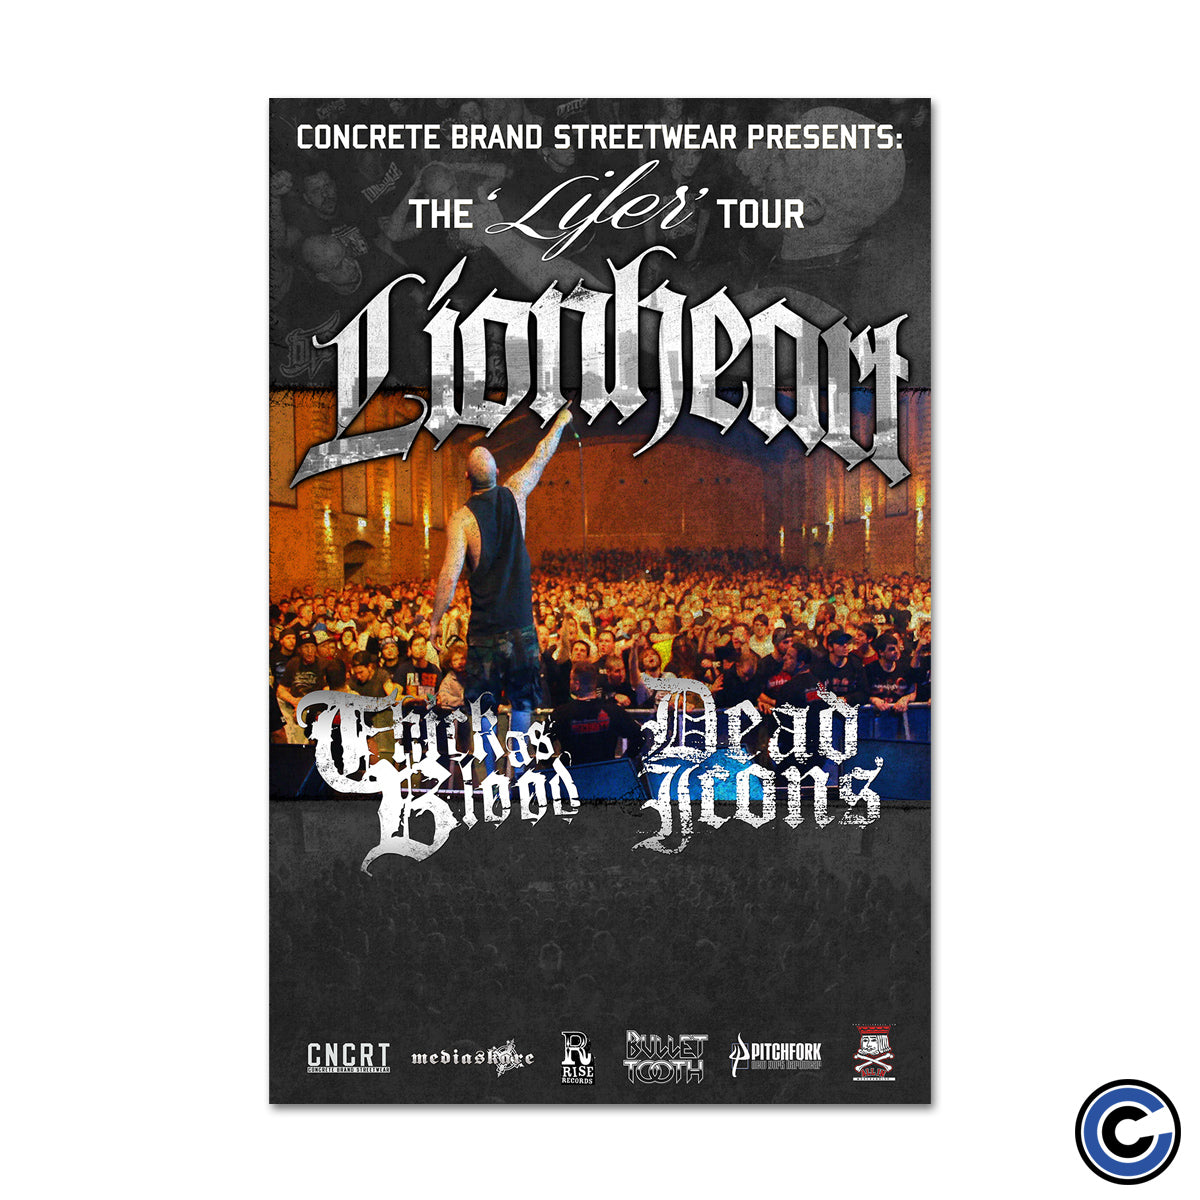 Lionheart/Dead Icons "Tour" Poster